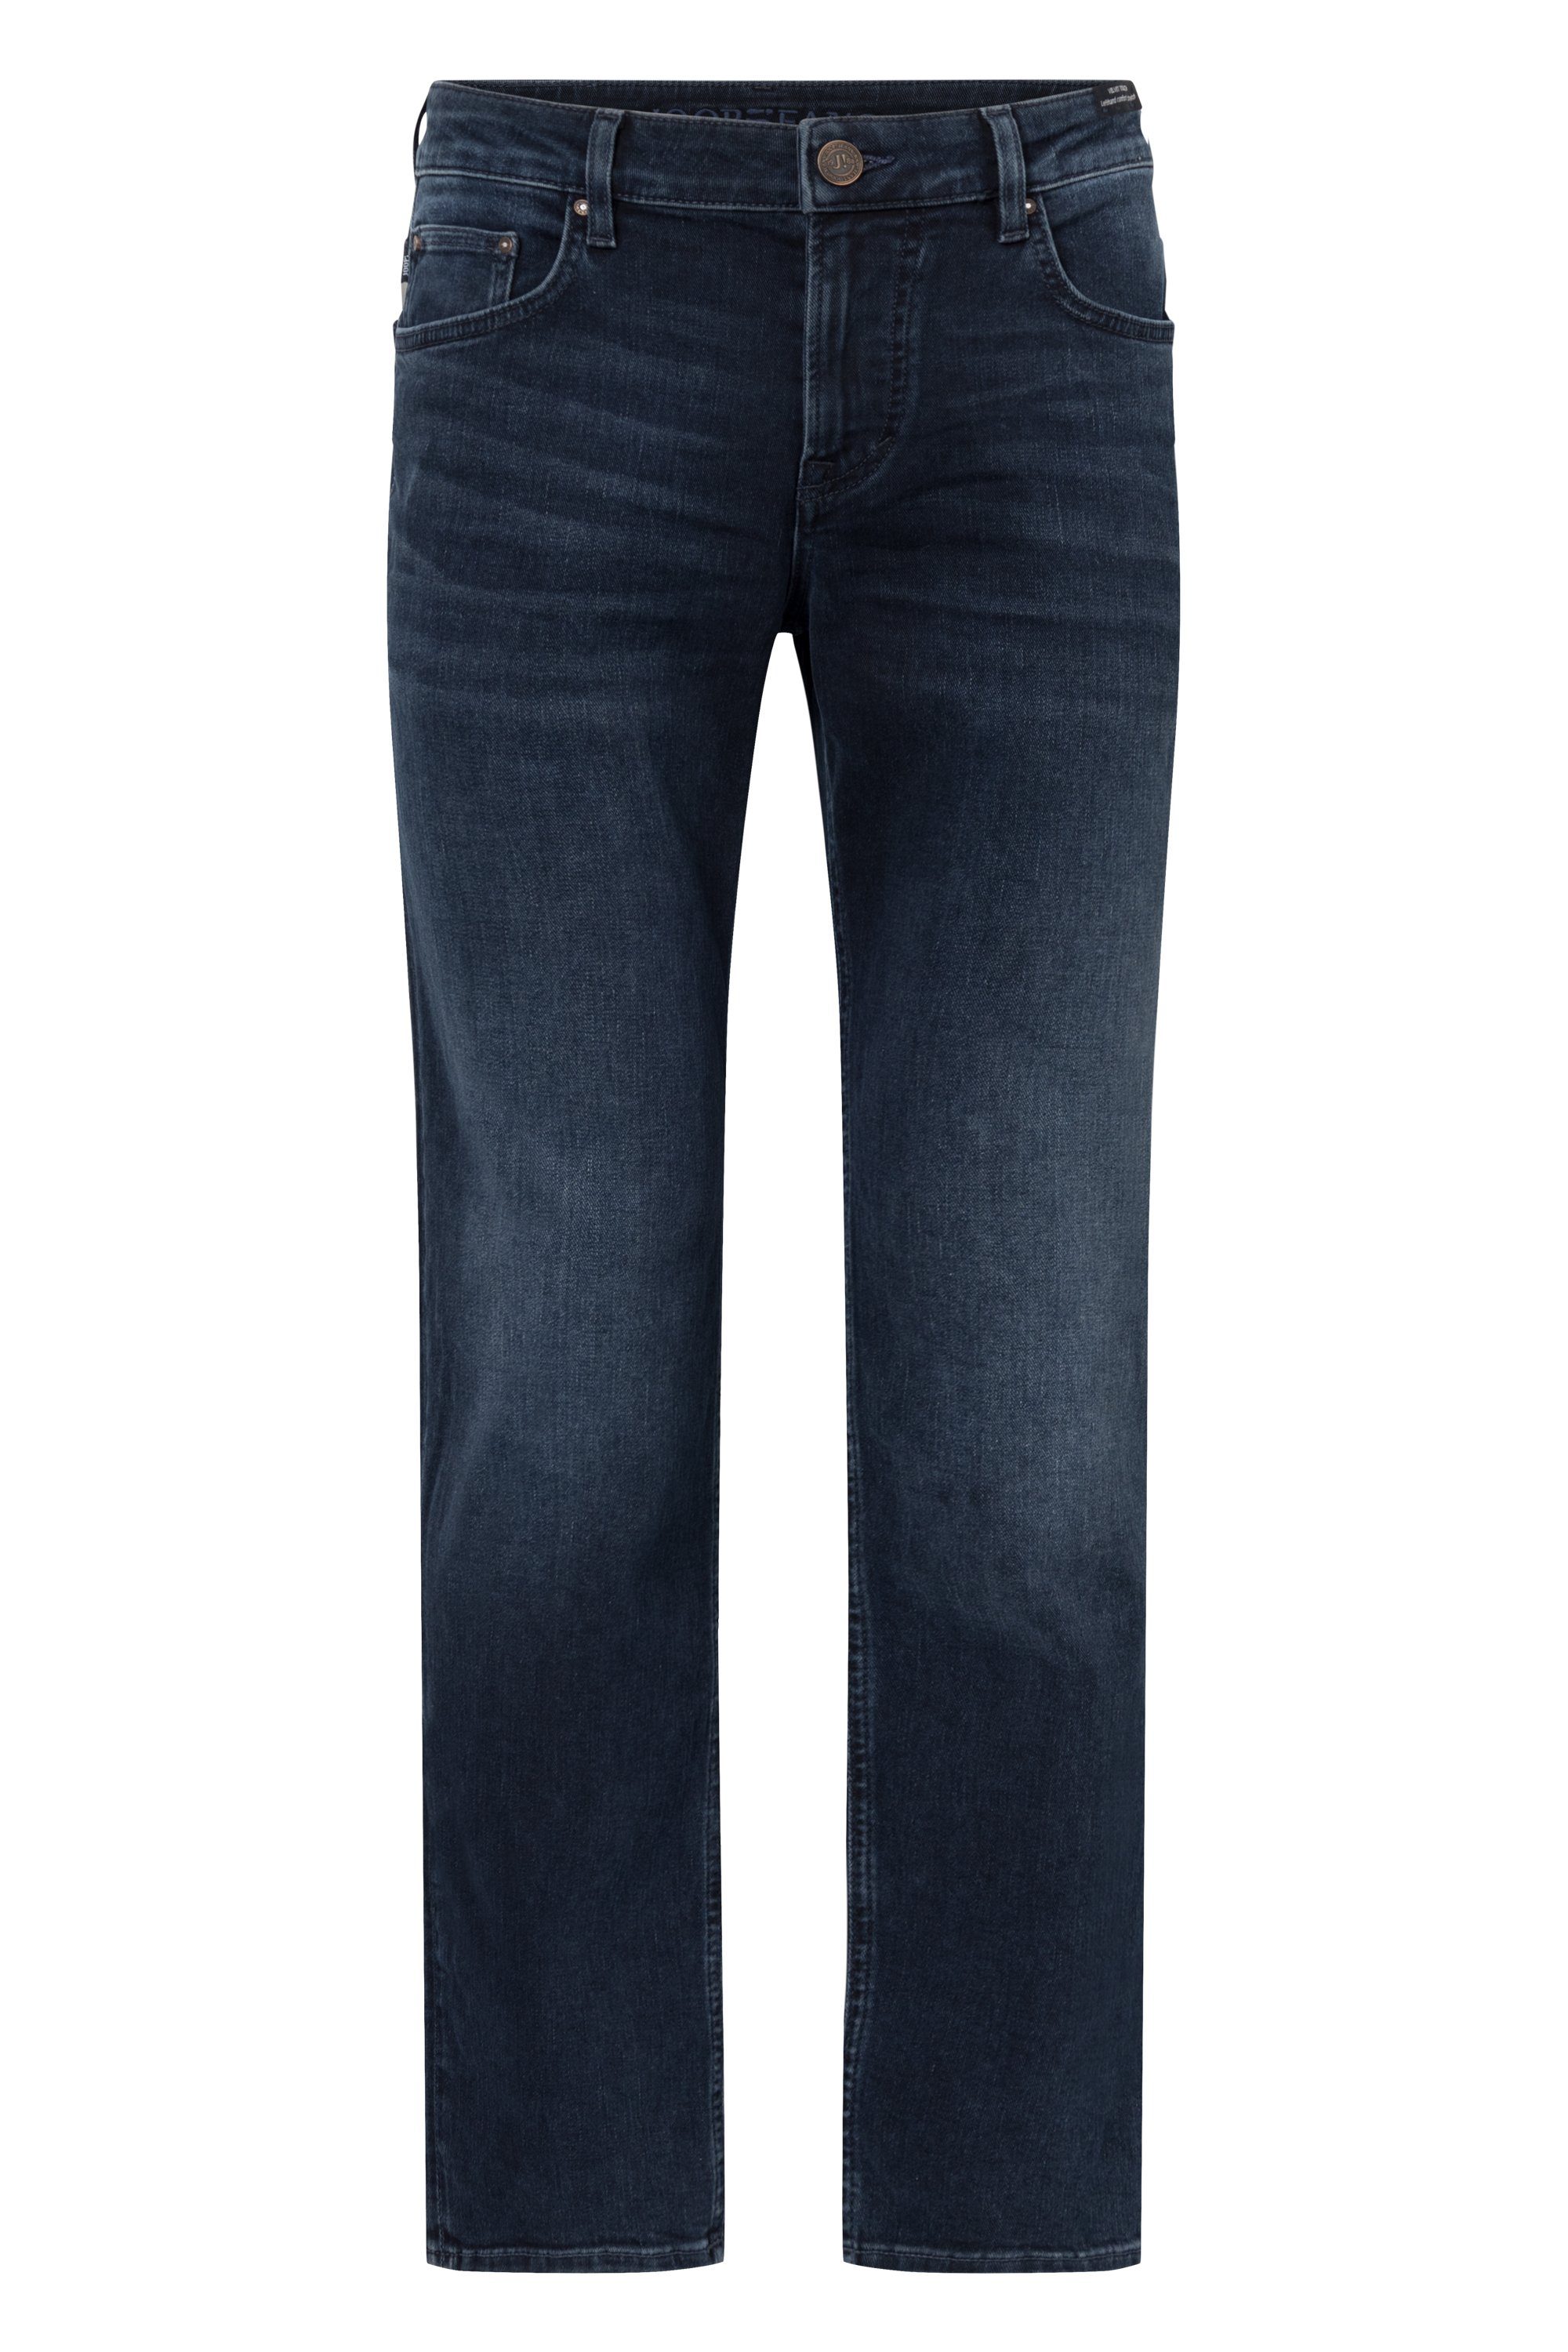 Joop Jeans 5-Pocket-Jeans JJD-02Mitch